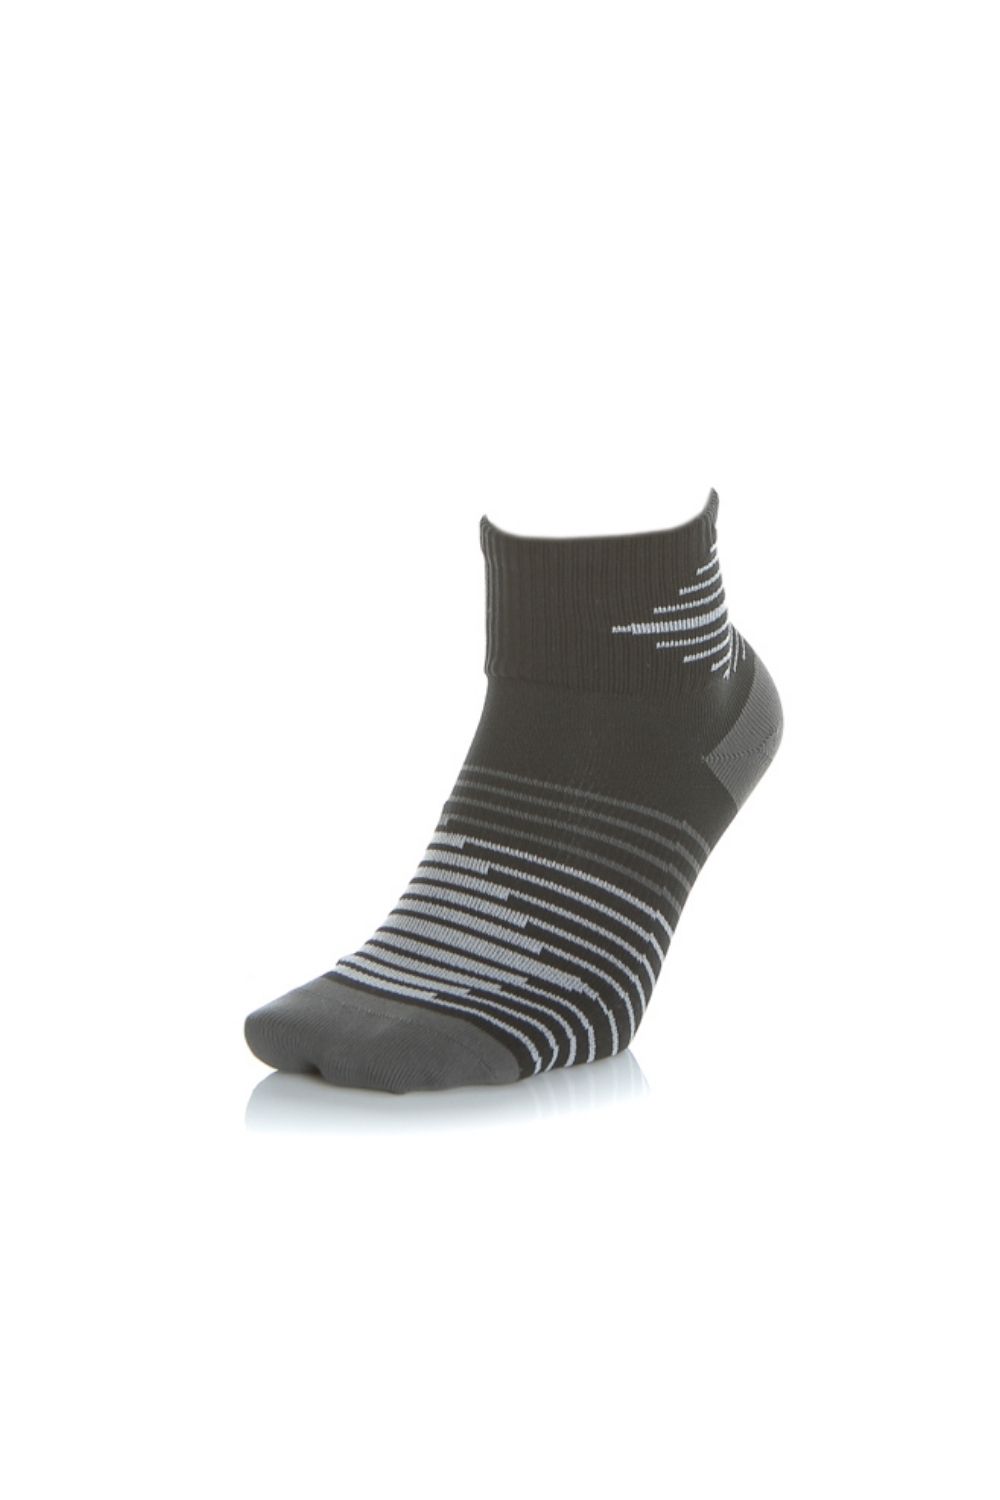 NIKE - Σετ αθλητικές κάλτσες NΙKΕ PERF LTWT λευκές-μαύρες Γυναικεία/Αξεσουάρ/Κάλτσες